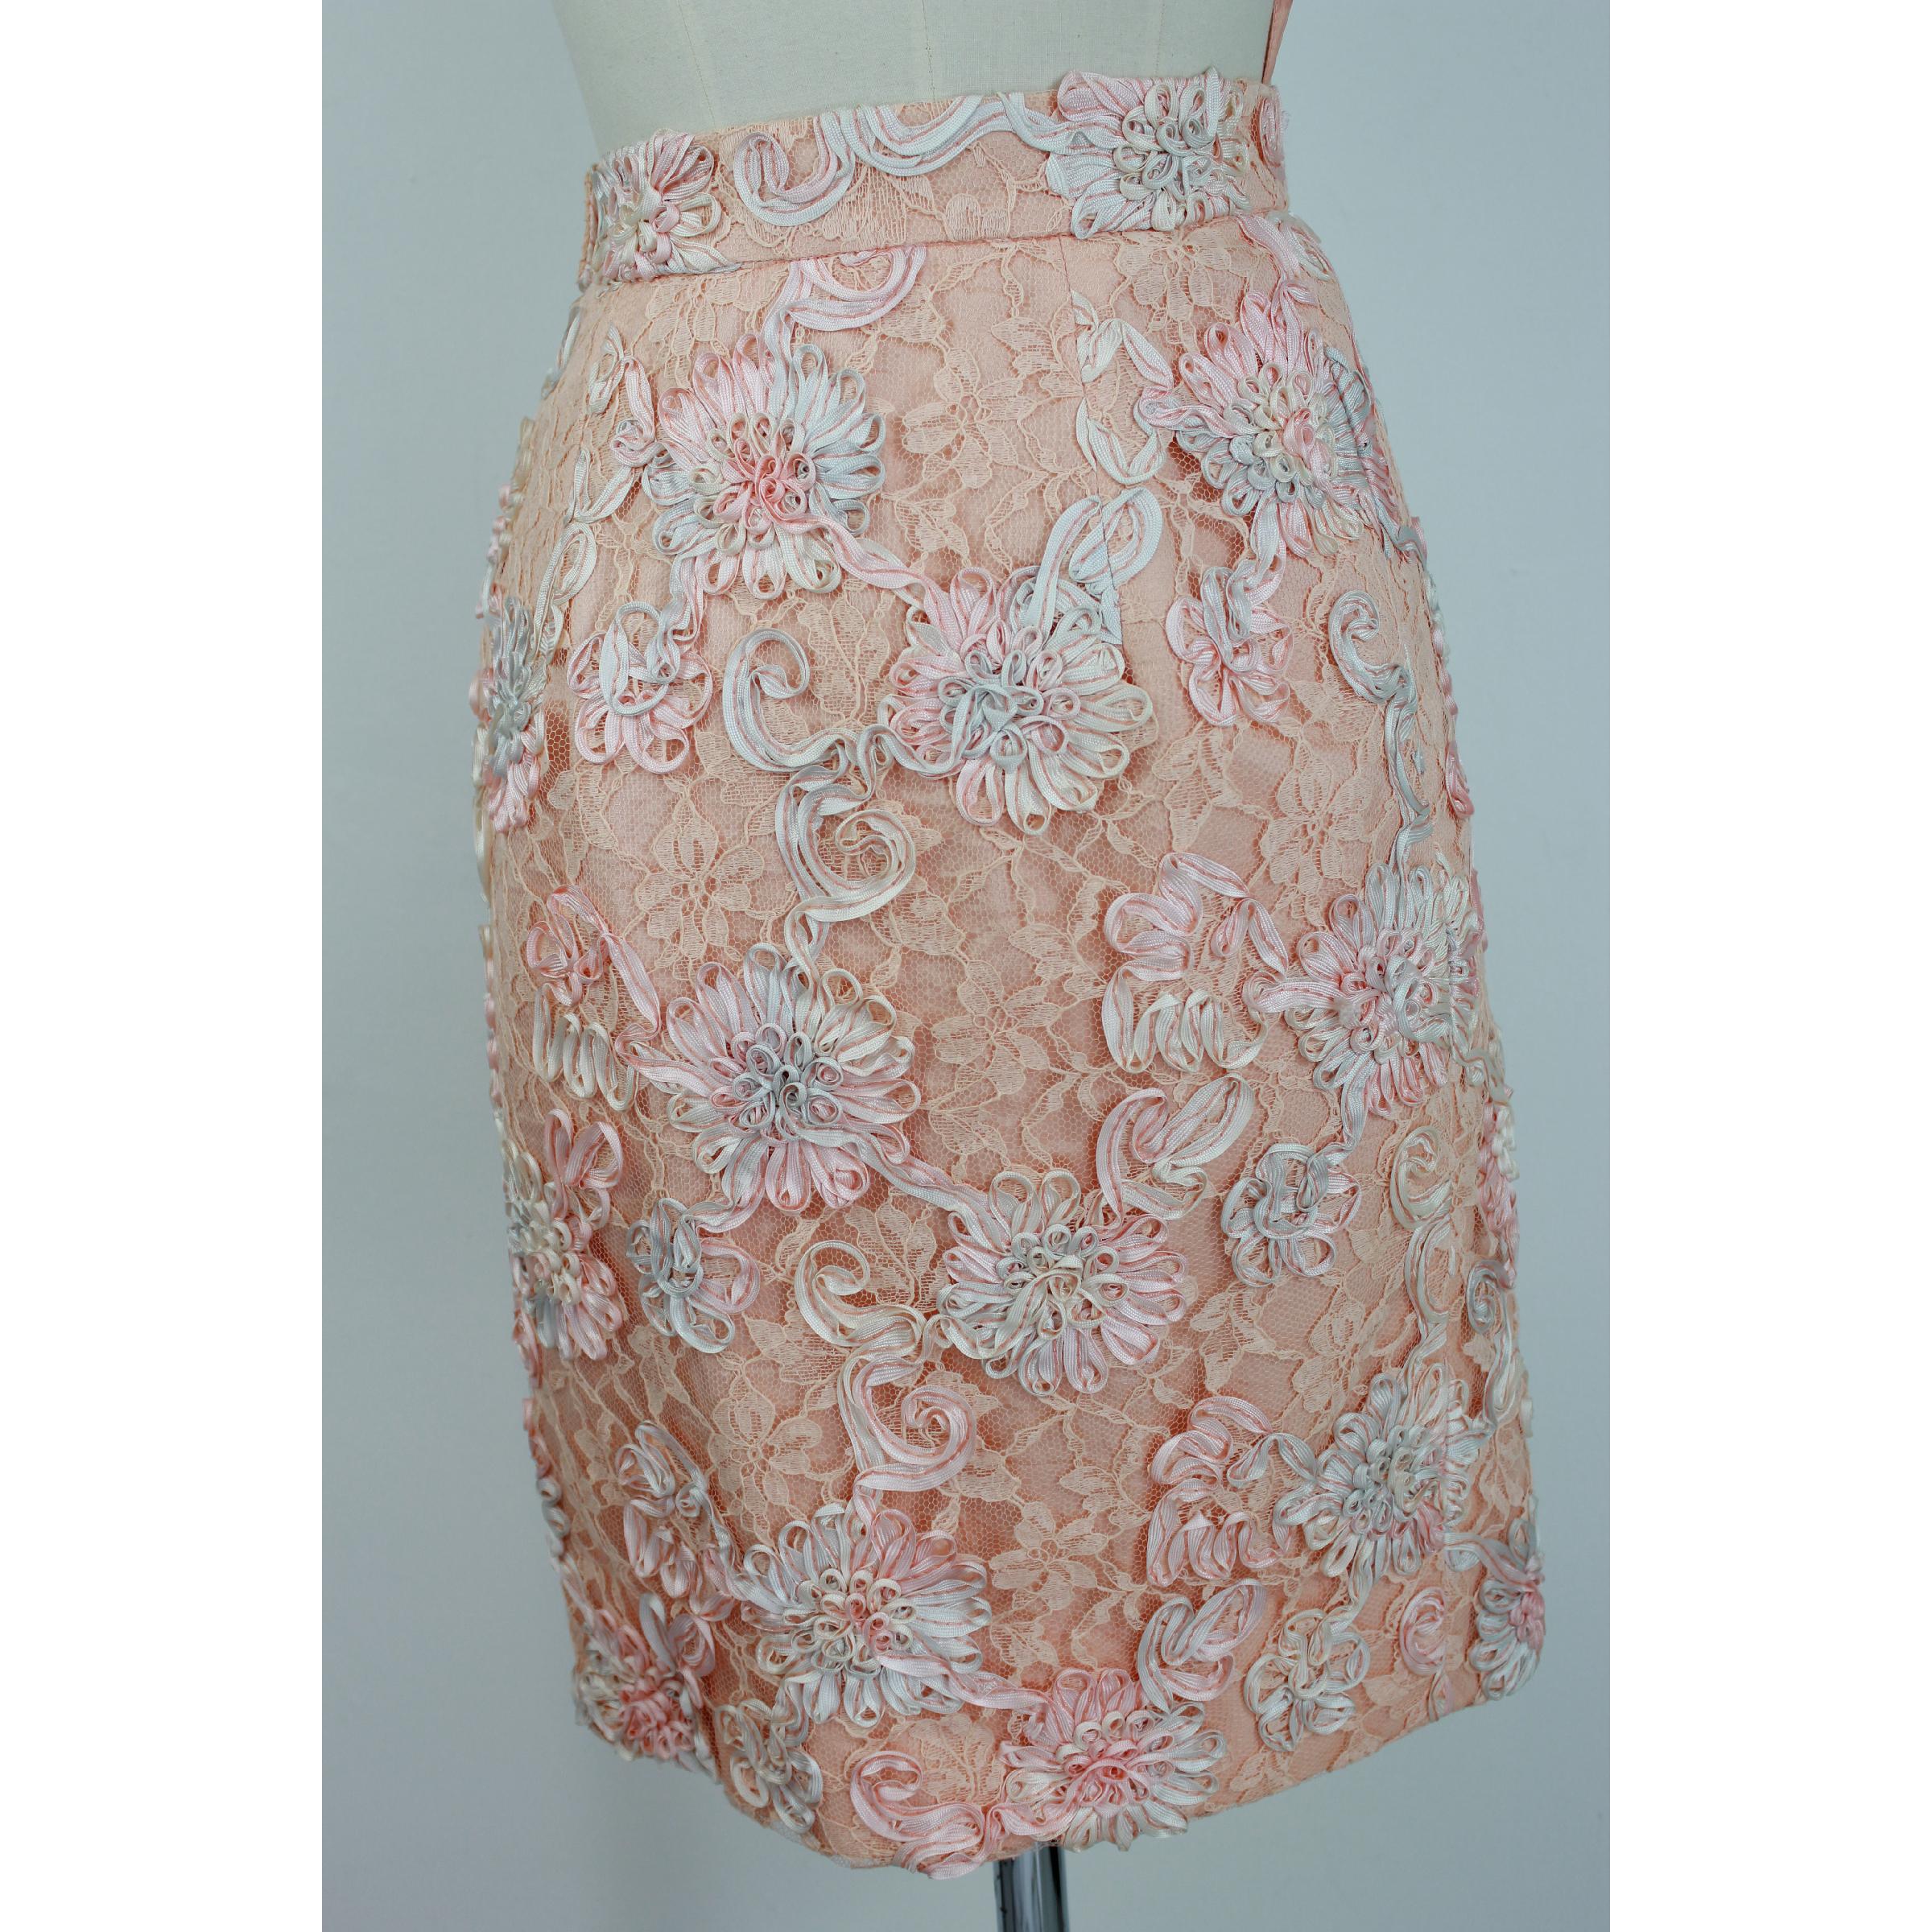 1970s Lanvin Pink Floral Lace Embroidered Formal Dress Set Skirt Jacket 5